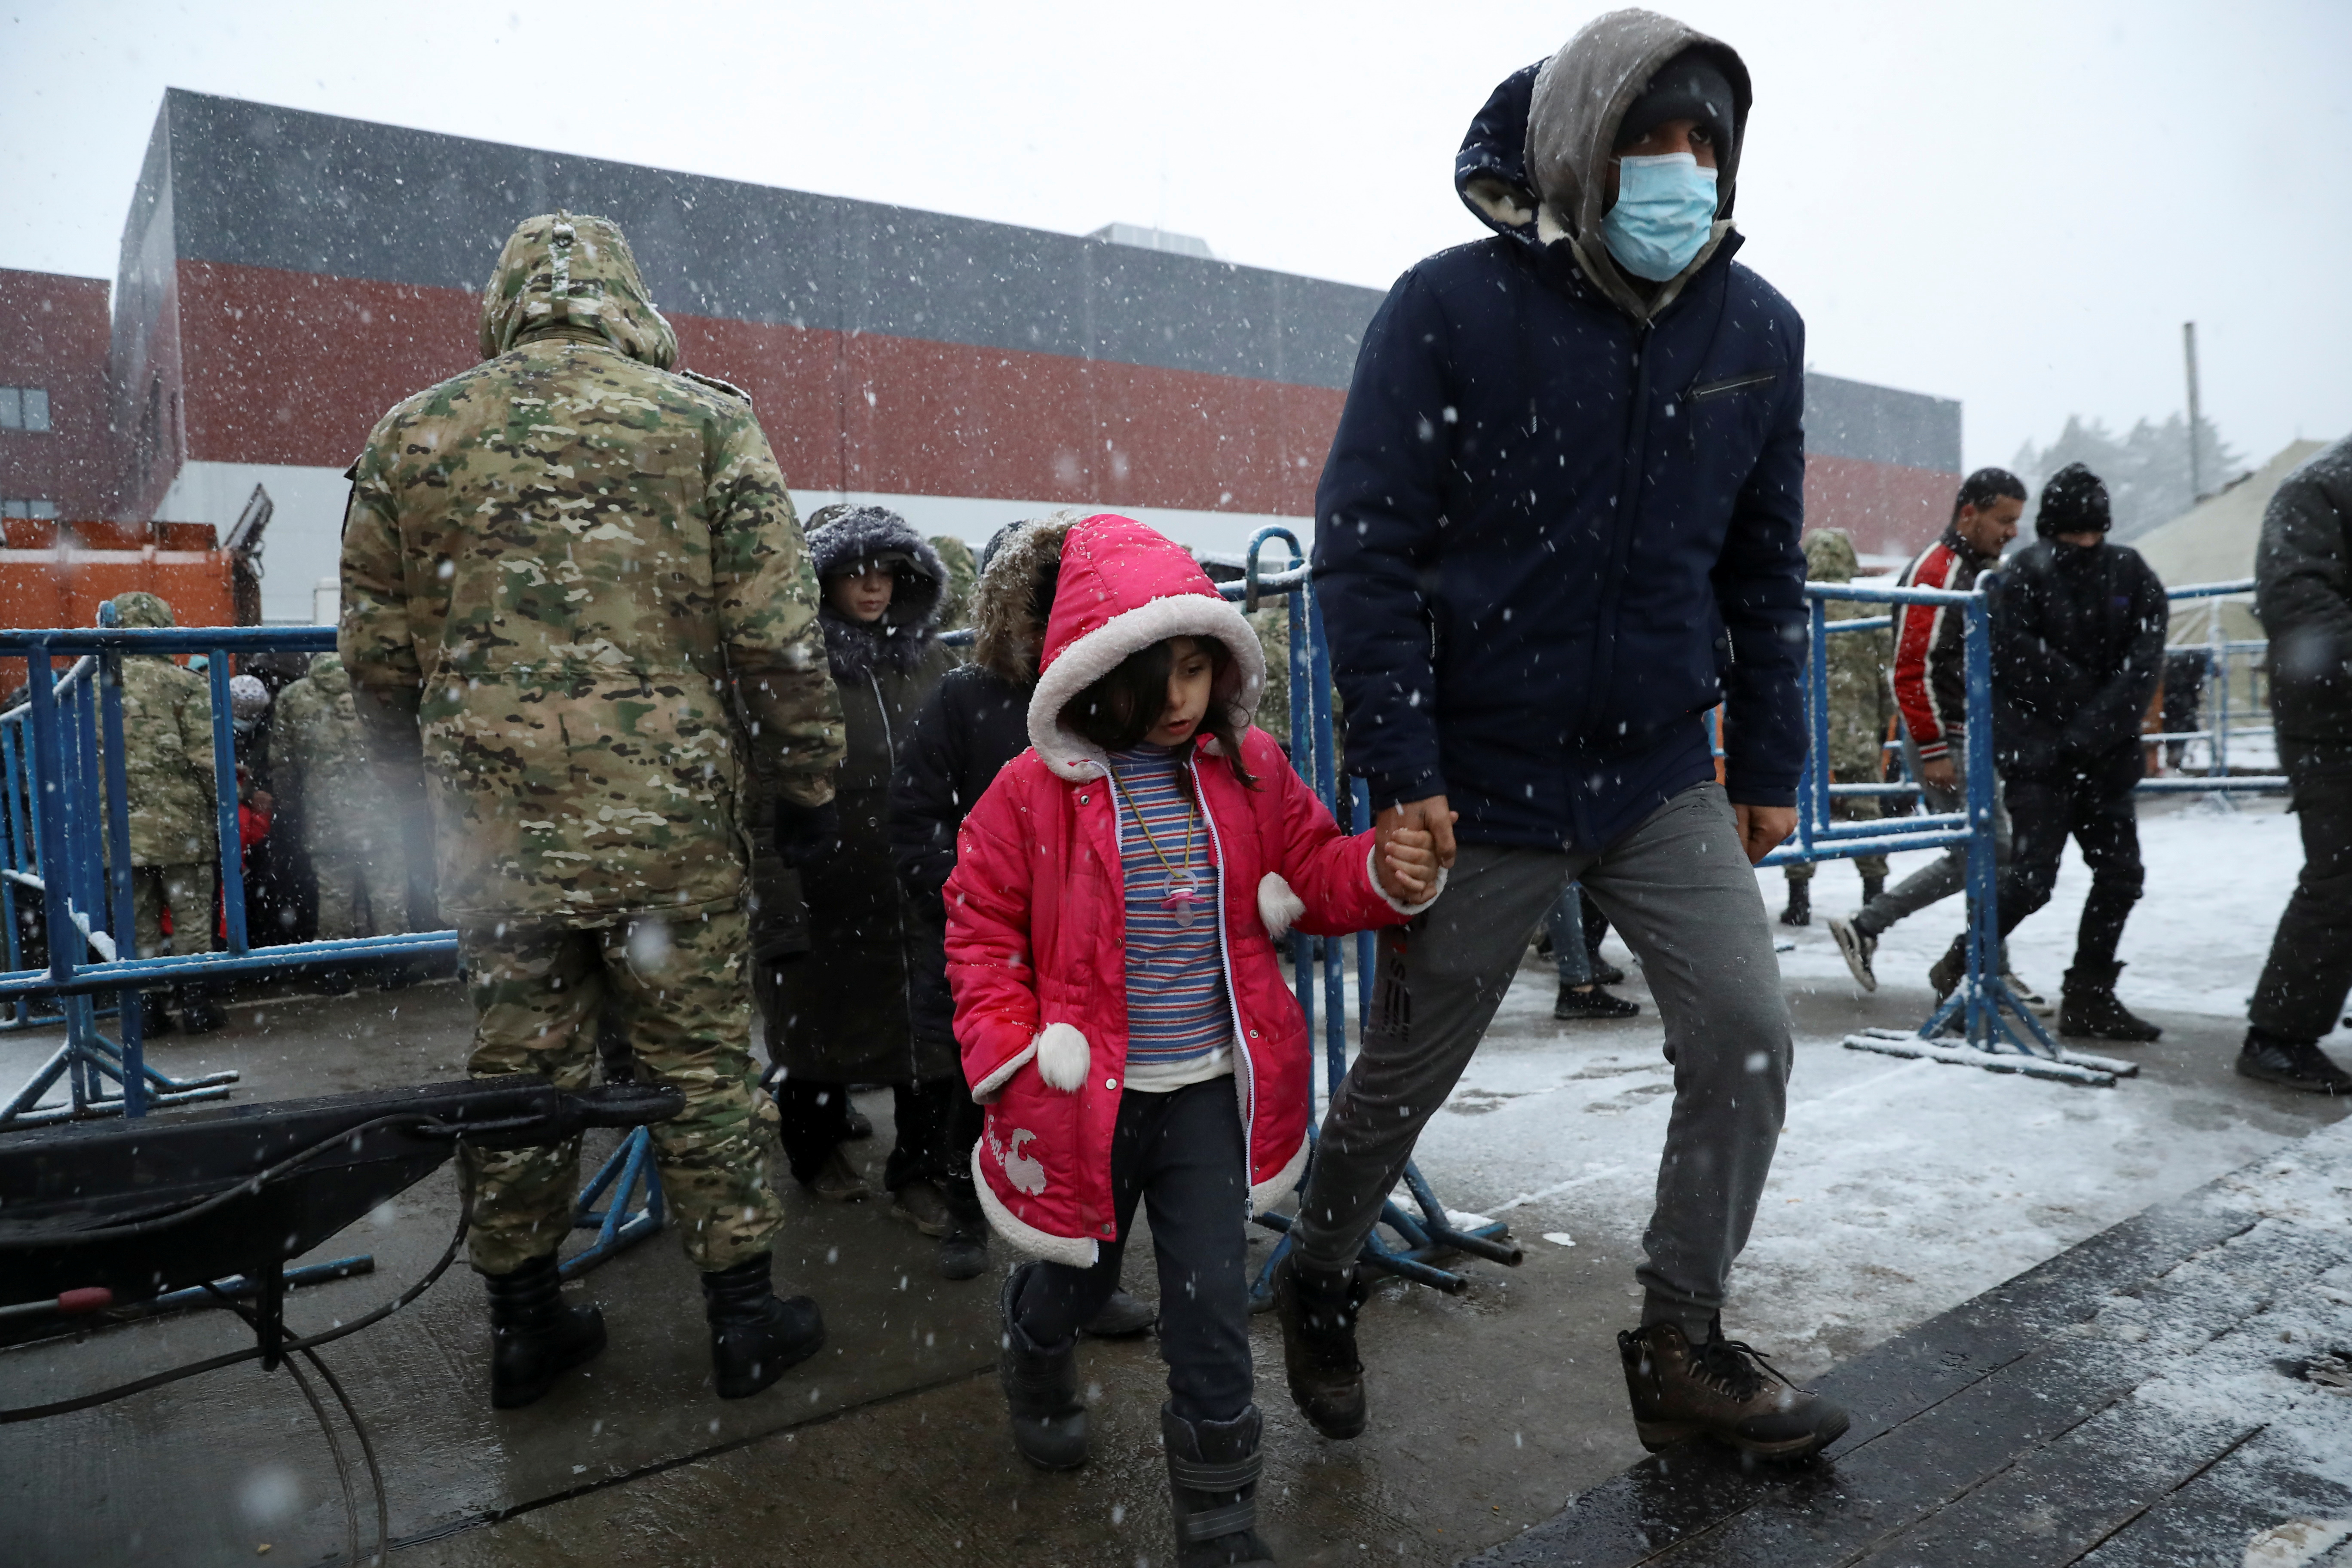 एक प्रवासी बच्चे के साथ बर्फबारी के दौरान, बेलारूस-पोलिश सीमा के पास एक परिवहन और रसद केंद्र में, ग्रोड्नो क्षेत्र, बेलारूस में 23 नवंबर, 2021 को चलता है। REUTERS/Kacper Pempel